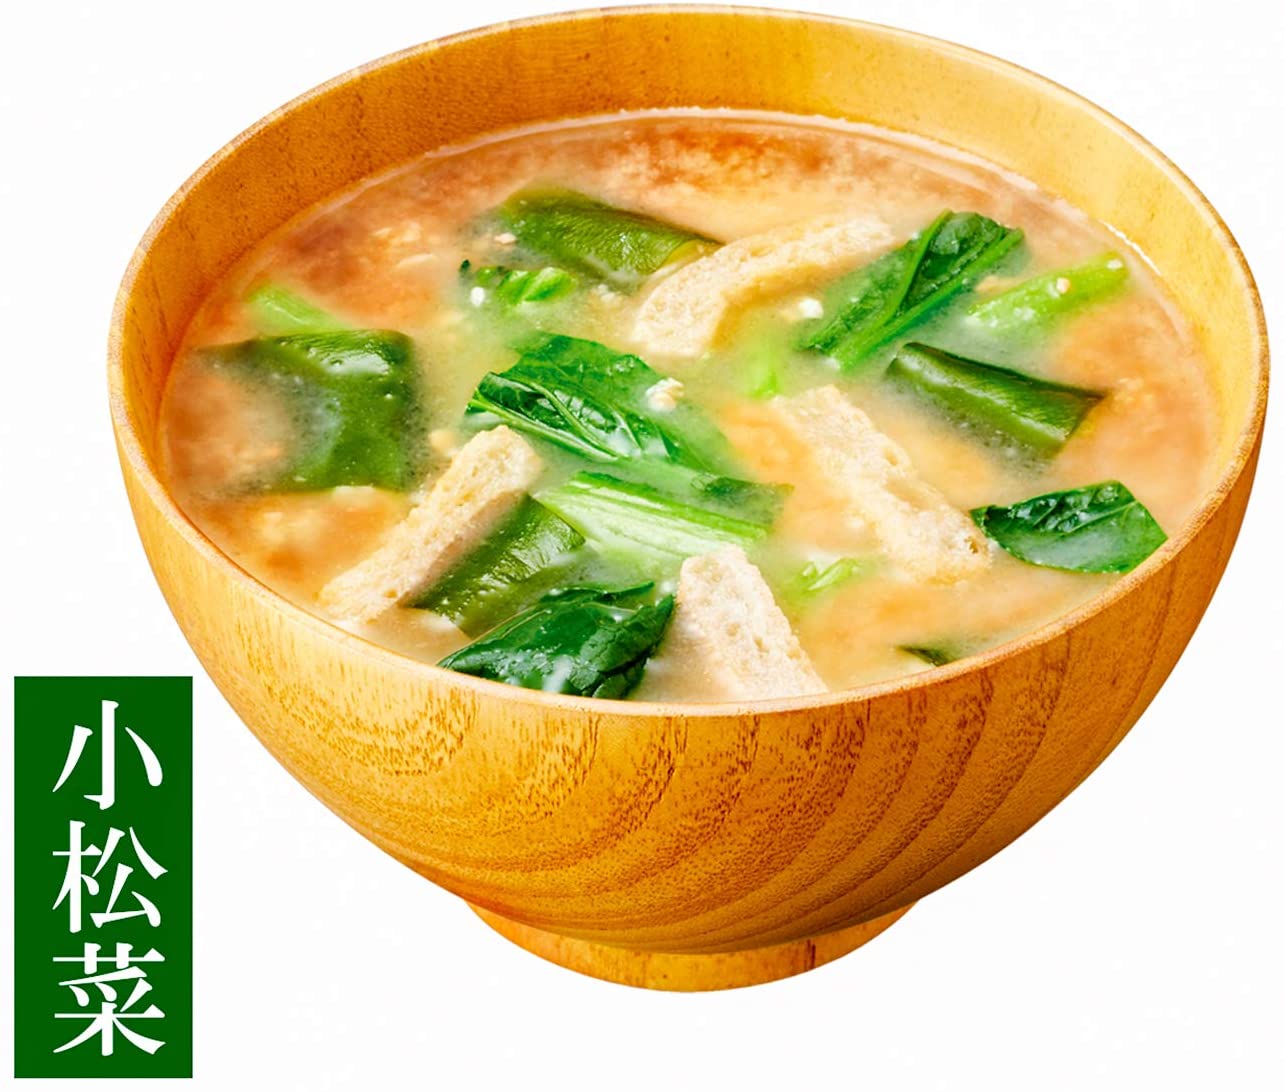 Enjuku Koji Instant Miso Soup Variety Pack (10 servings)